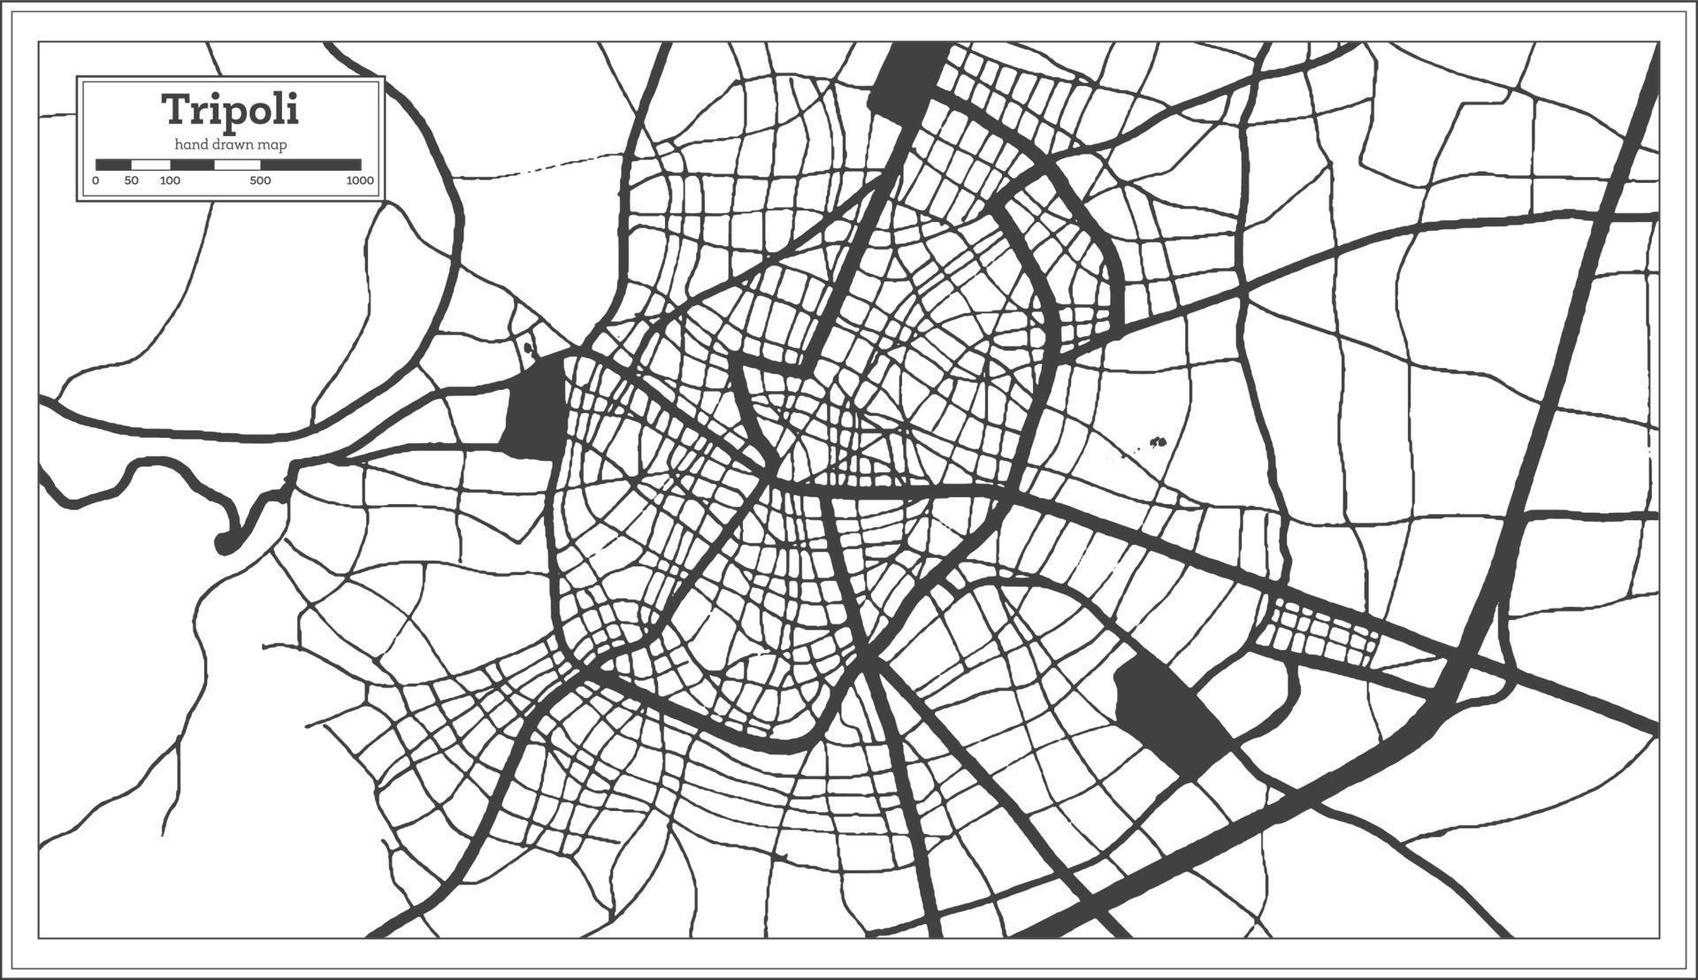 plan de la ville de tripoli grèce en noir et blanc dans un style rétro. carte muette. vecteur